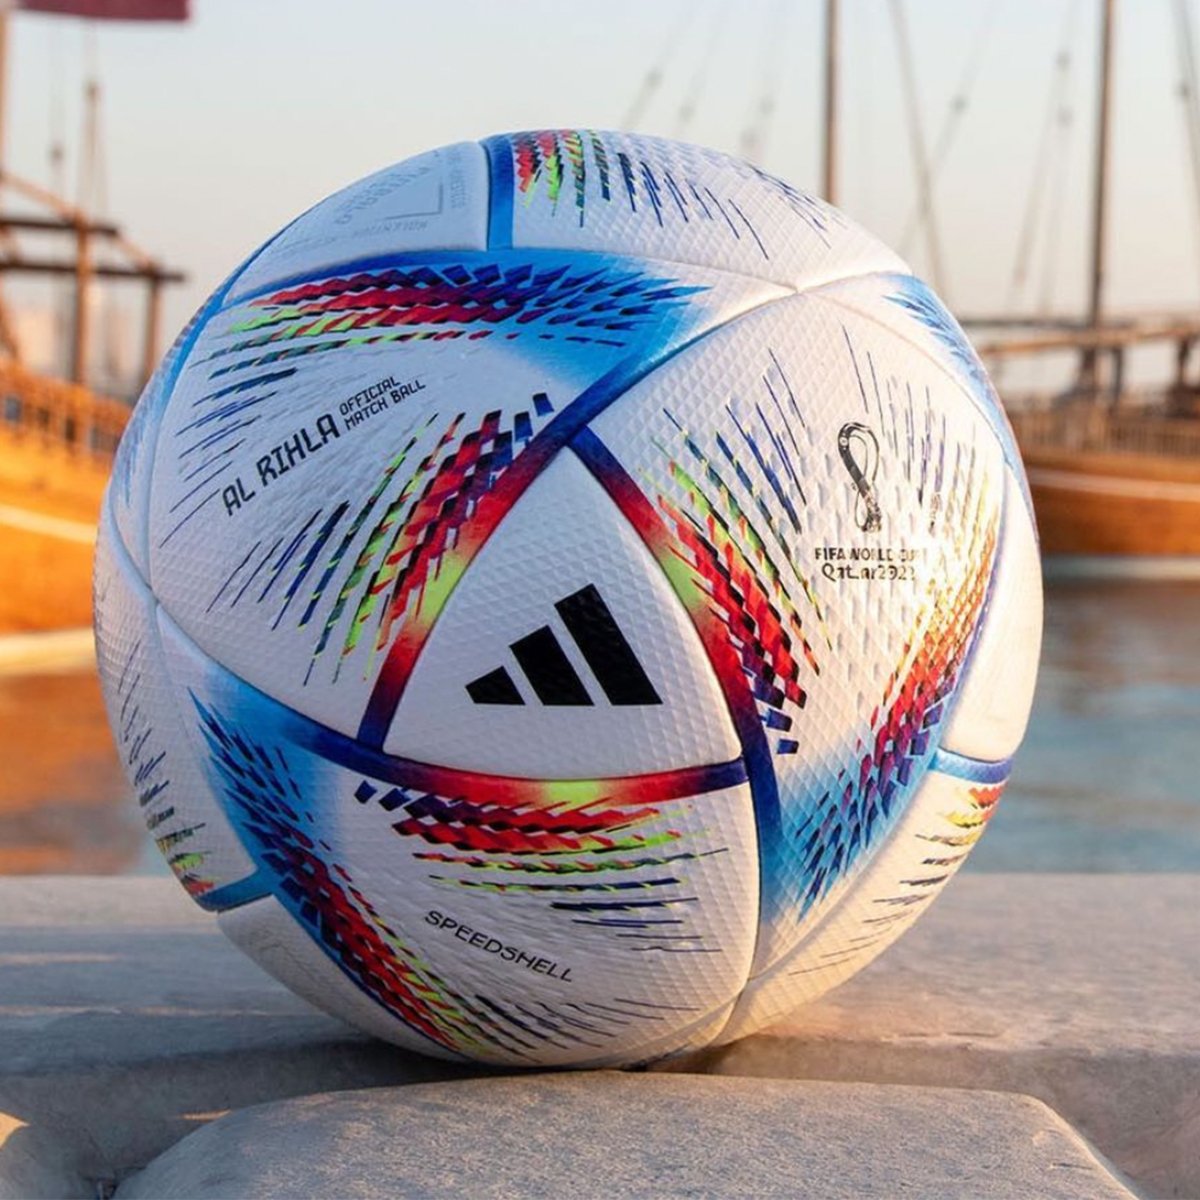 22年 カタールw杯の公式ボールが決定 過去の大会の公式ボールも含めてご紹介 バランスタイムズ サッカーのあるファッションライフ